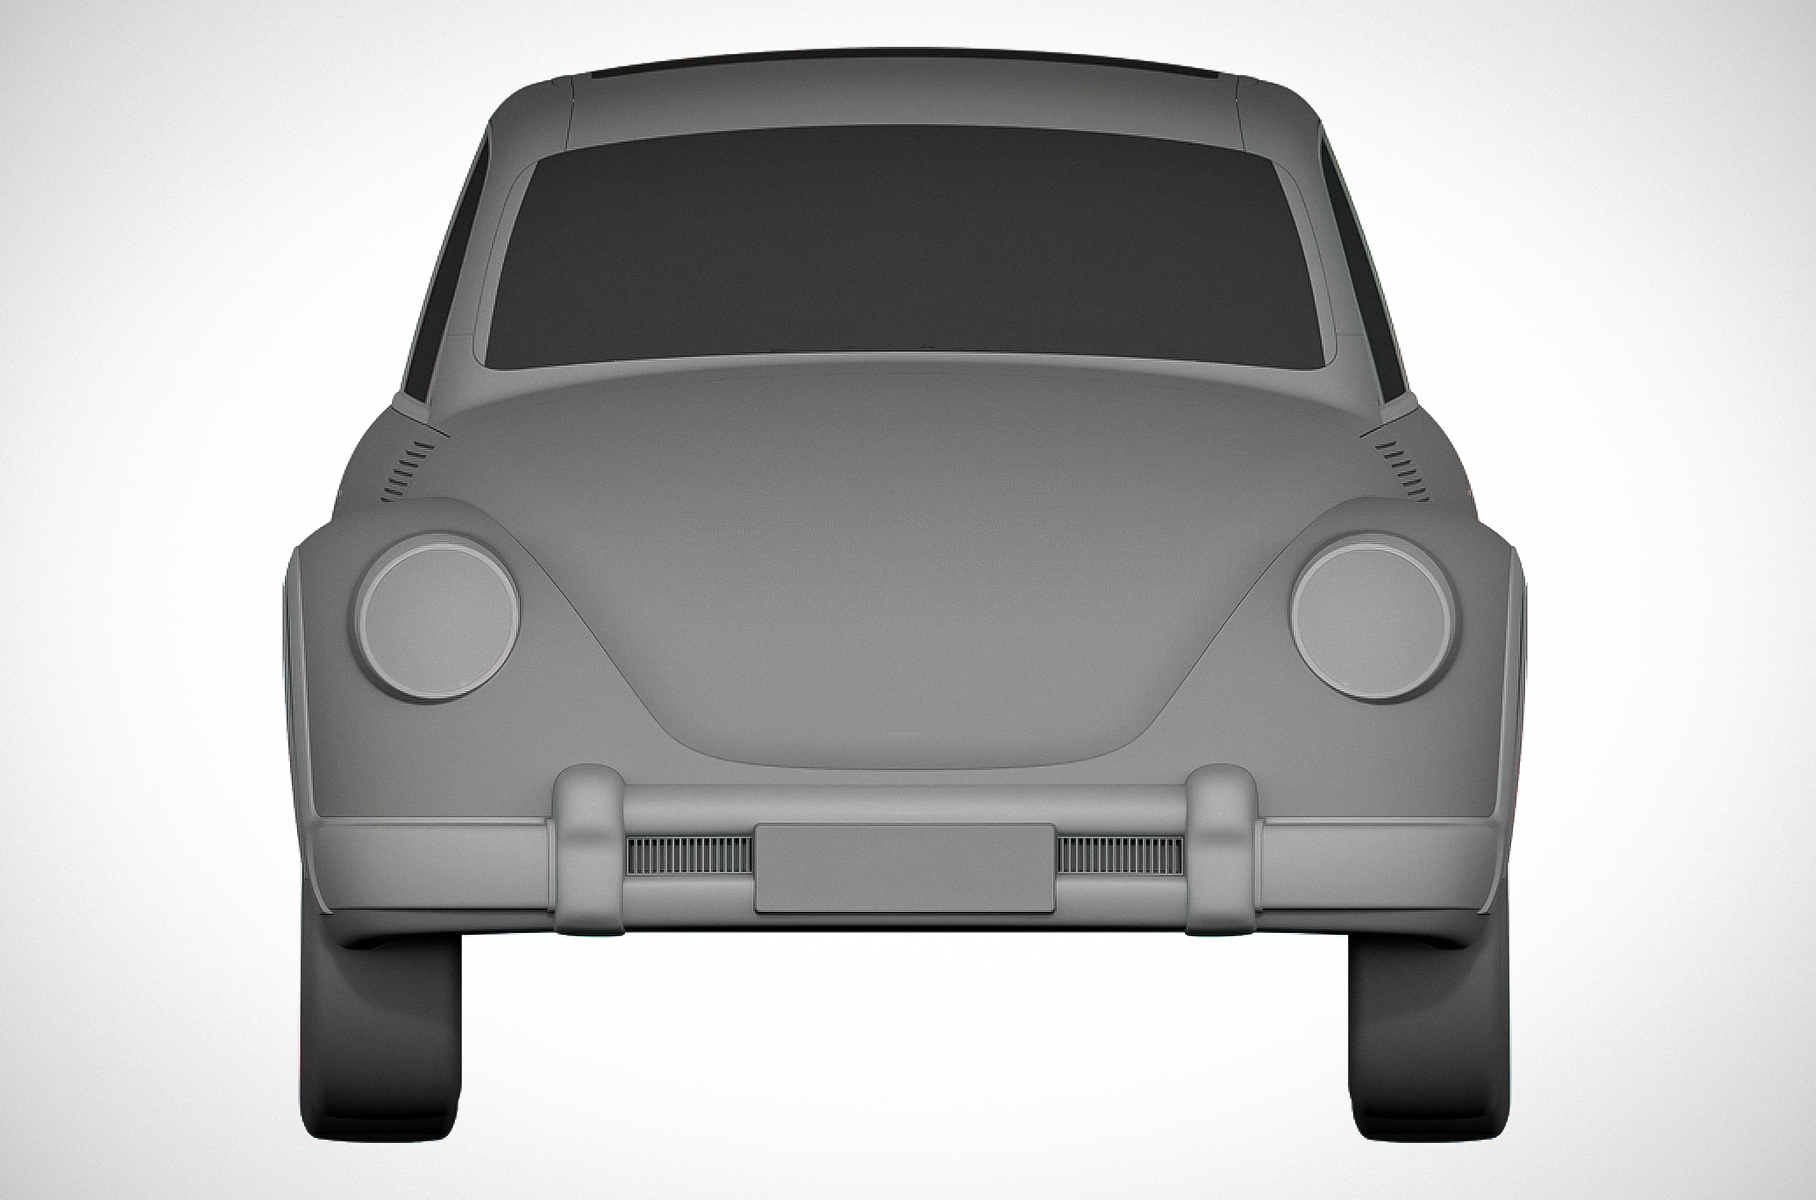 Great Wall запатентовал «клона» Volkswagen Beetle. Теперь у китайской компании могут возникнуть серьезные проблемы